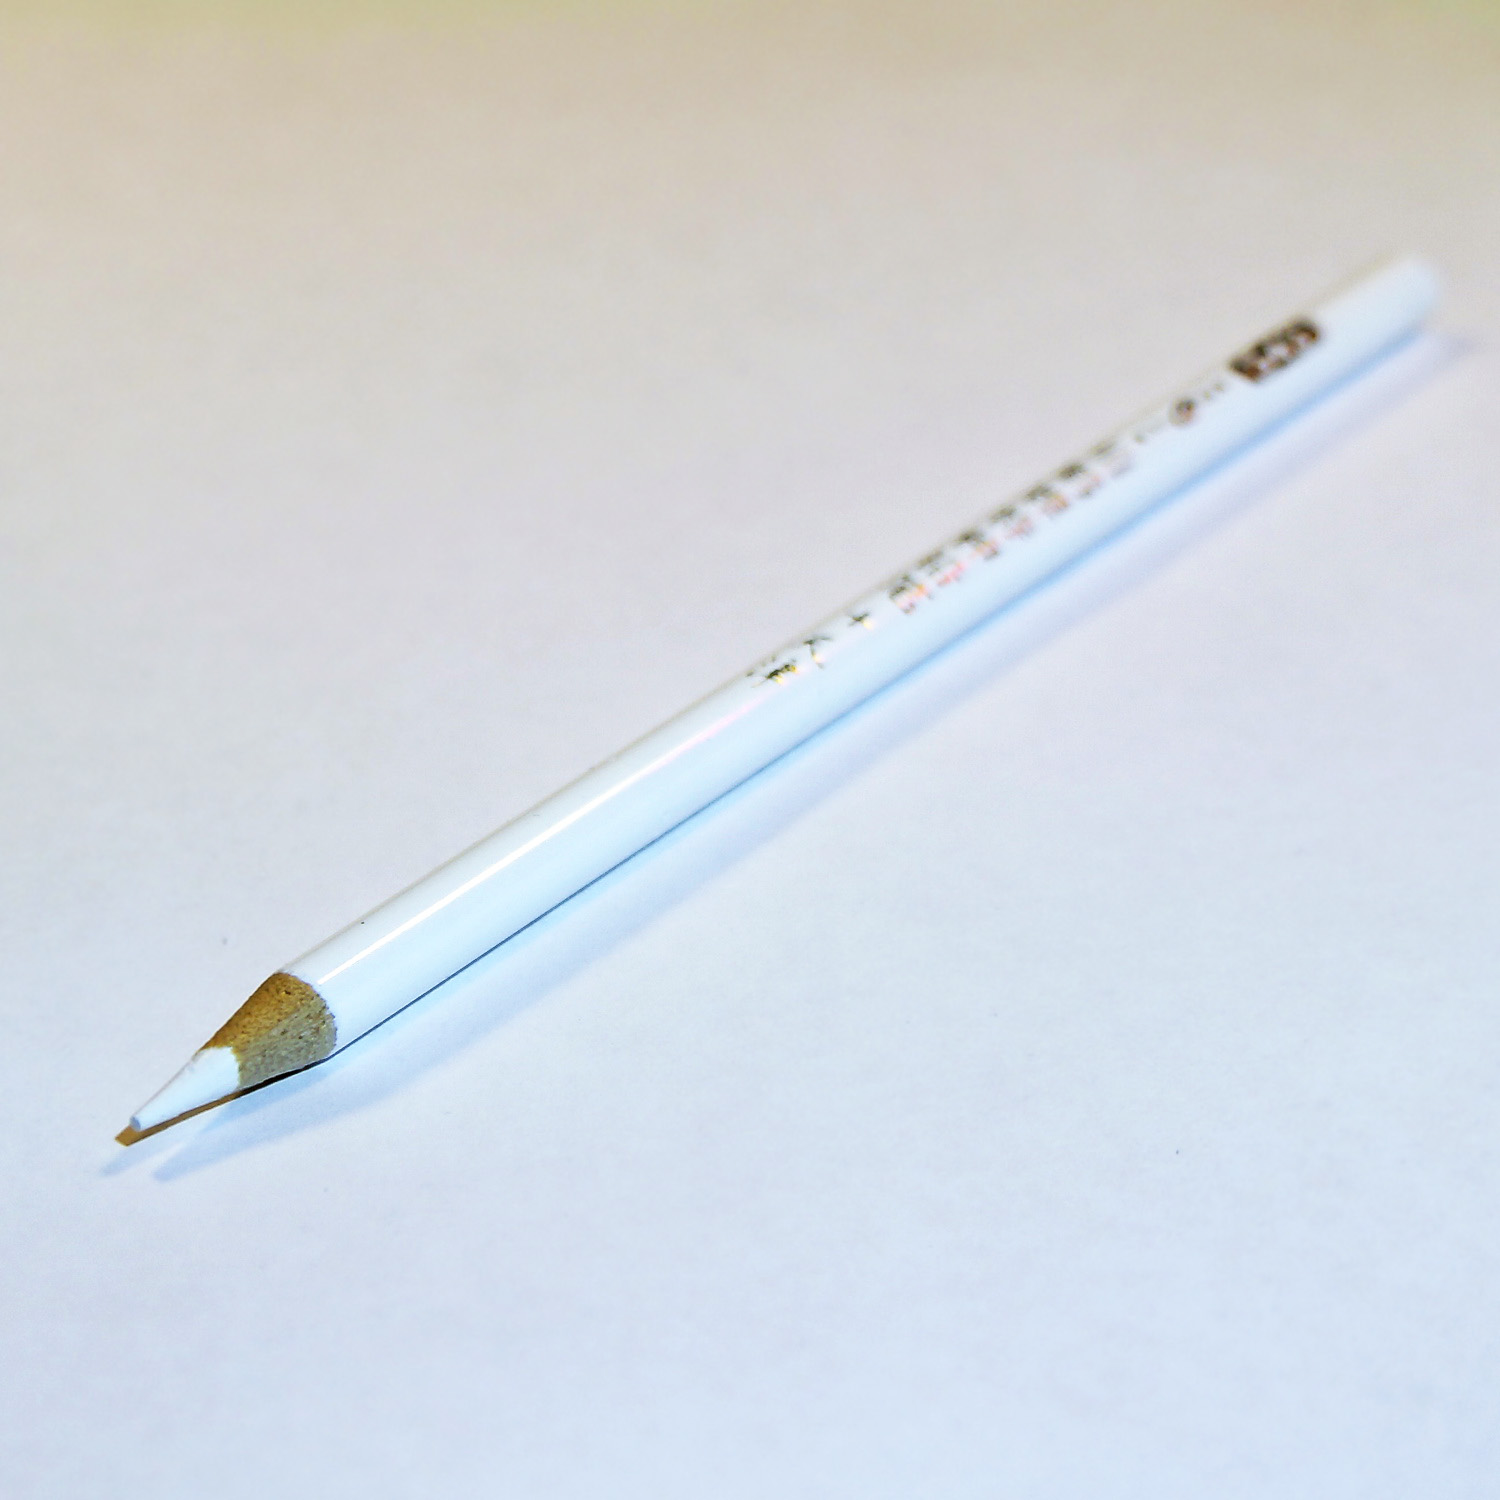 Маркерный карандаш для рыбалки. White Pencil. Top Marker карандаш. Шариковая ручка со встроенным грифельным карандашом 2 цвета.